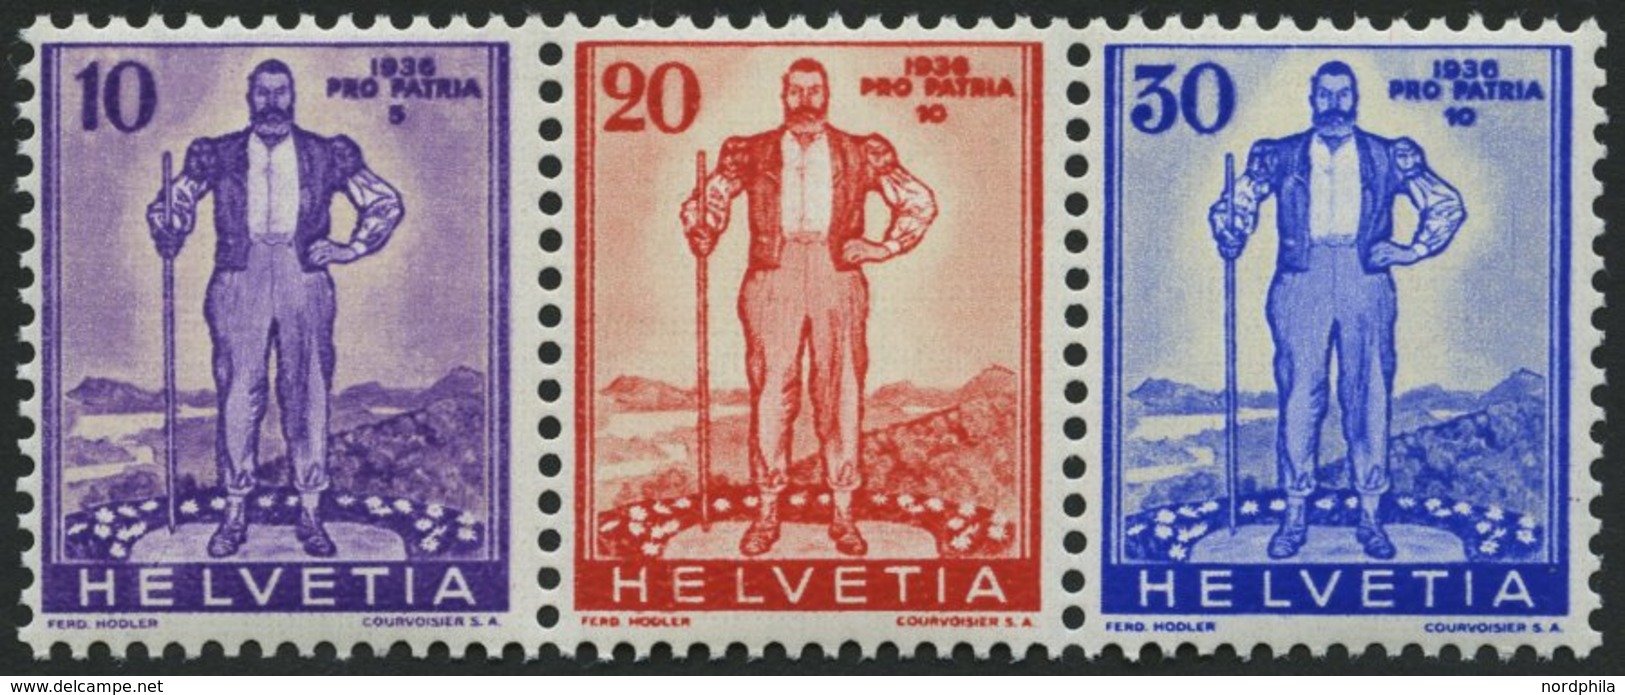 SCHWEIZ BUNDESPOST A294-96 **, 1936, Pro Patria, Prachtstreifen, Mi. 52.- - 1843-1852 Poste Federali E Cantonali